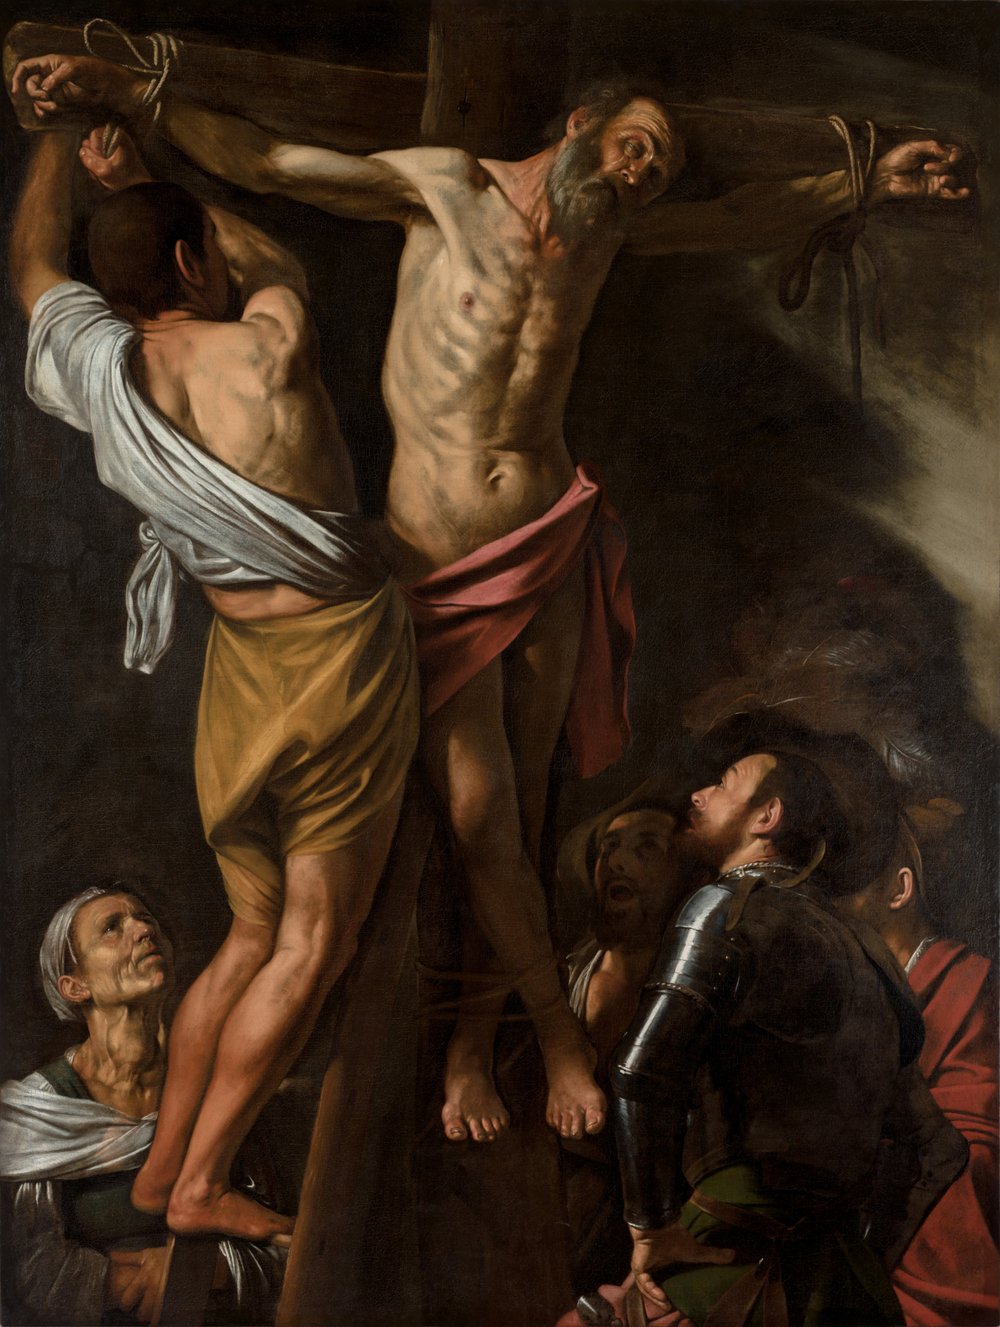 Caravaggio, "The Crucifixion of Saint Andrew" (1607)